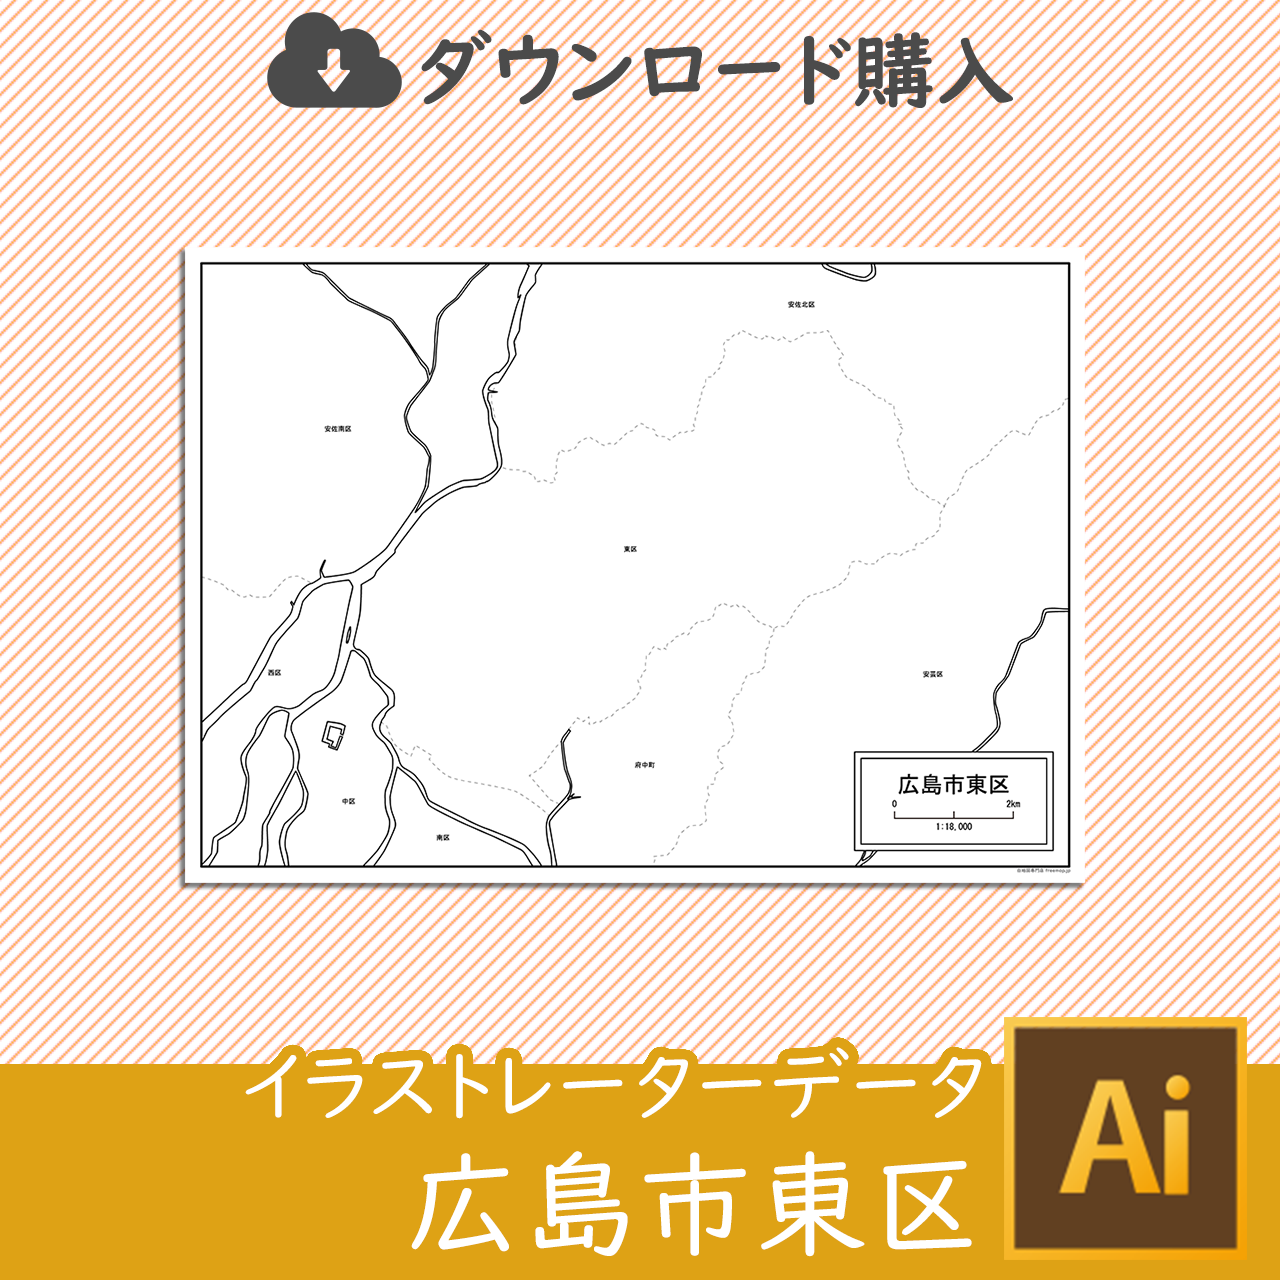 広島市東区のaiデータのサムネイル画像